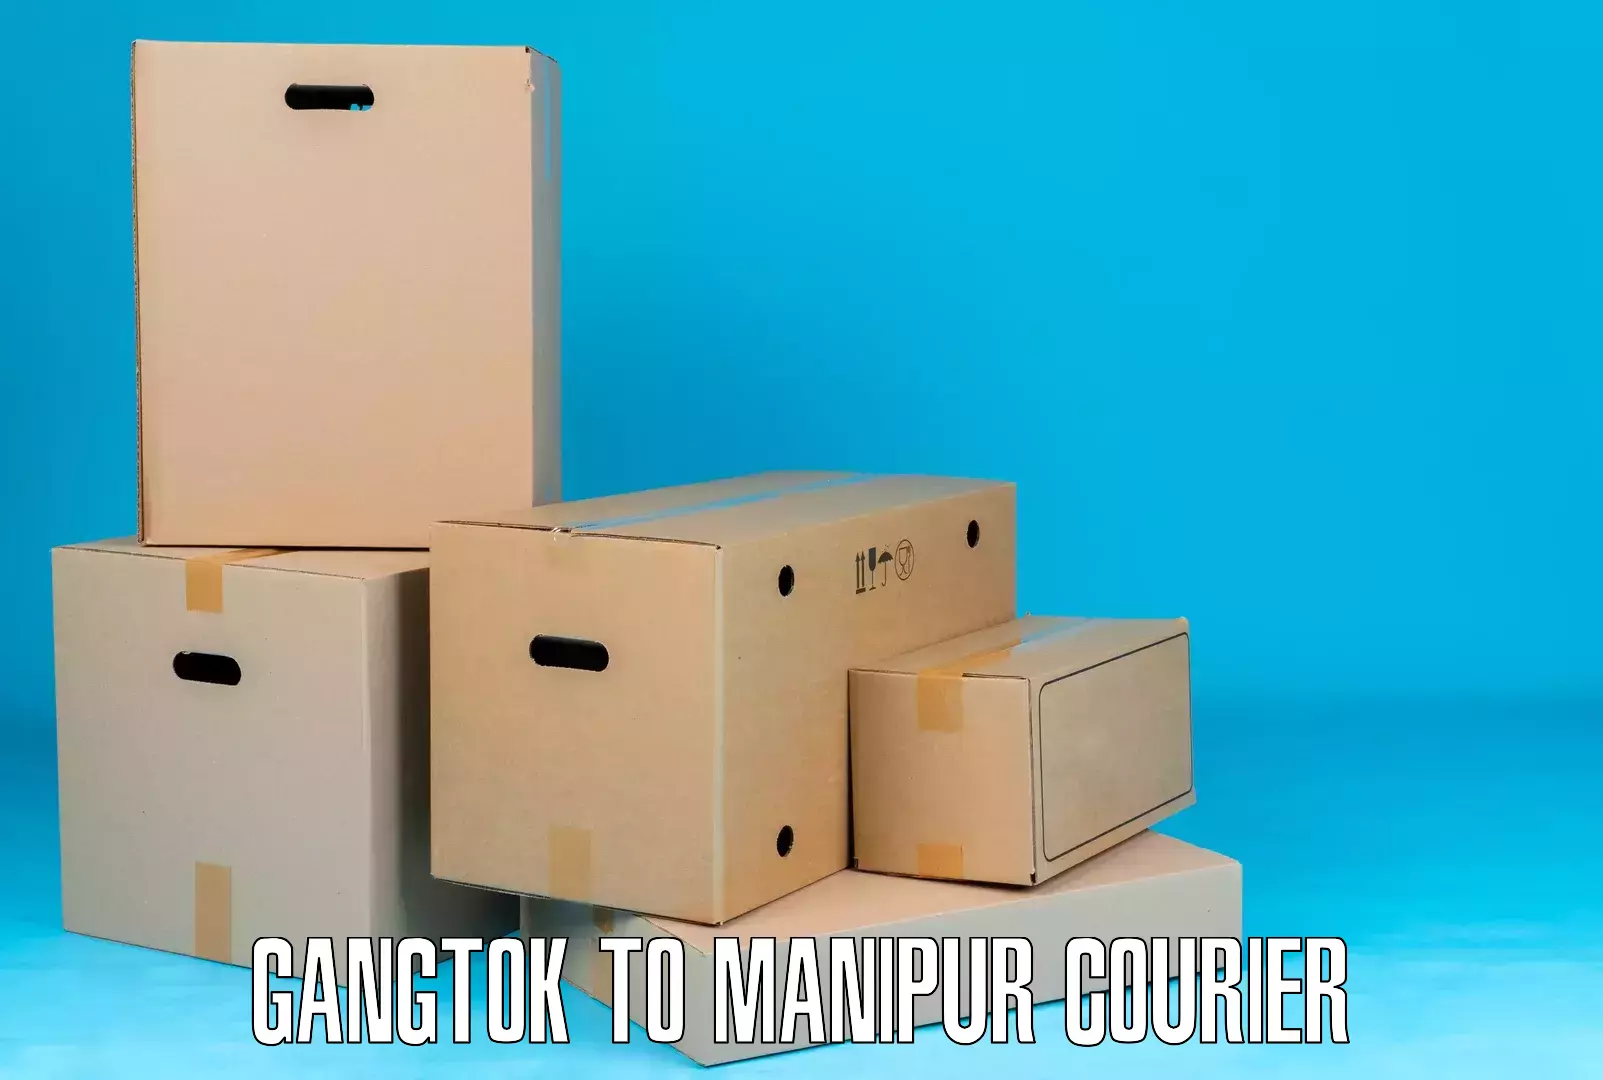 Courier service innovation Gangtok to Moirang